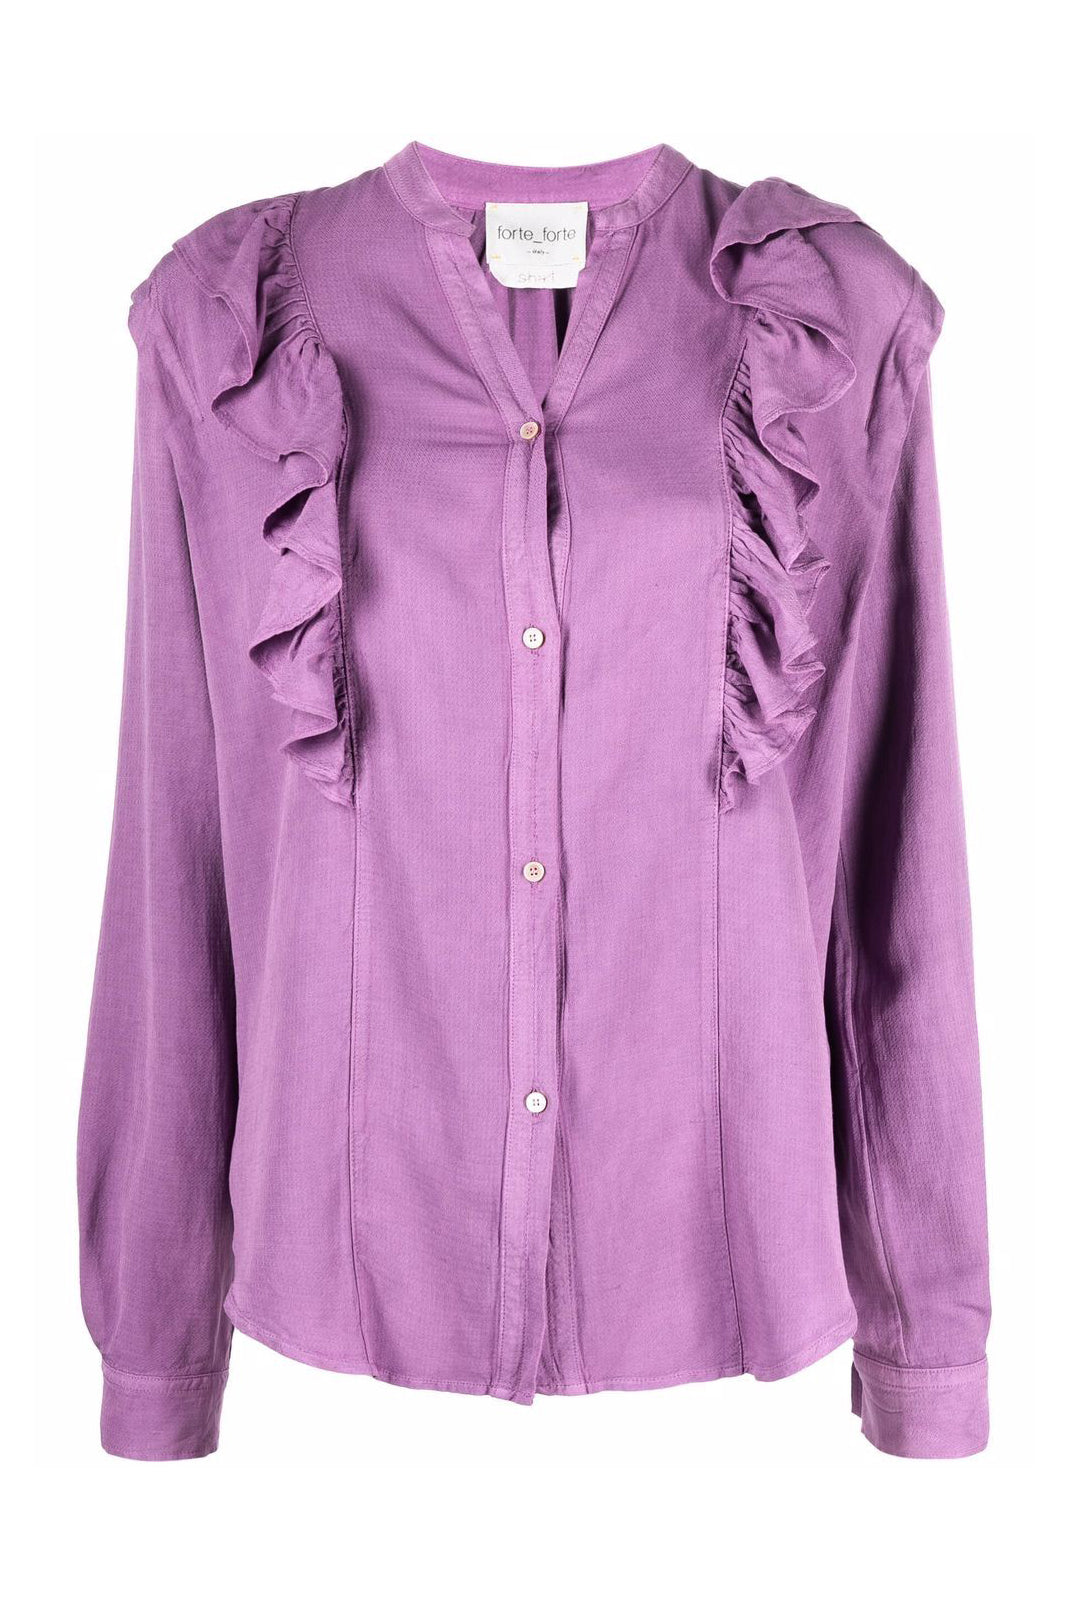 Ruffled-detail shirt, purple